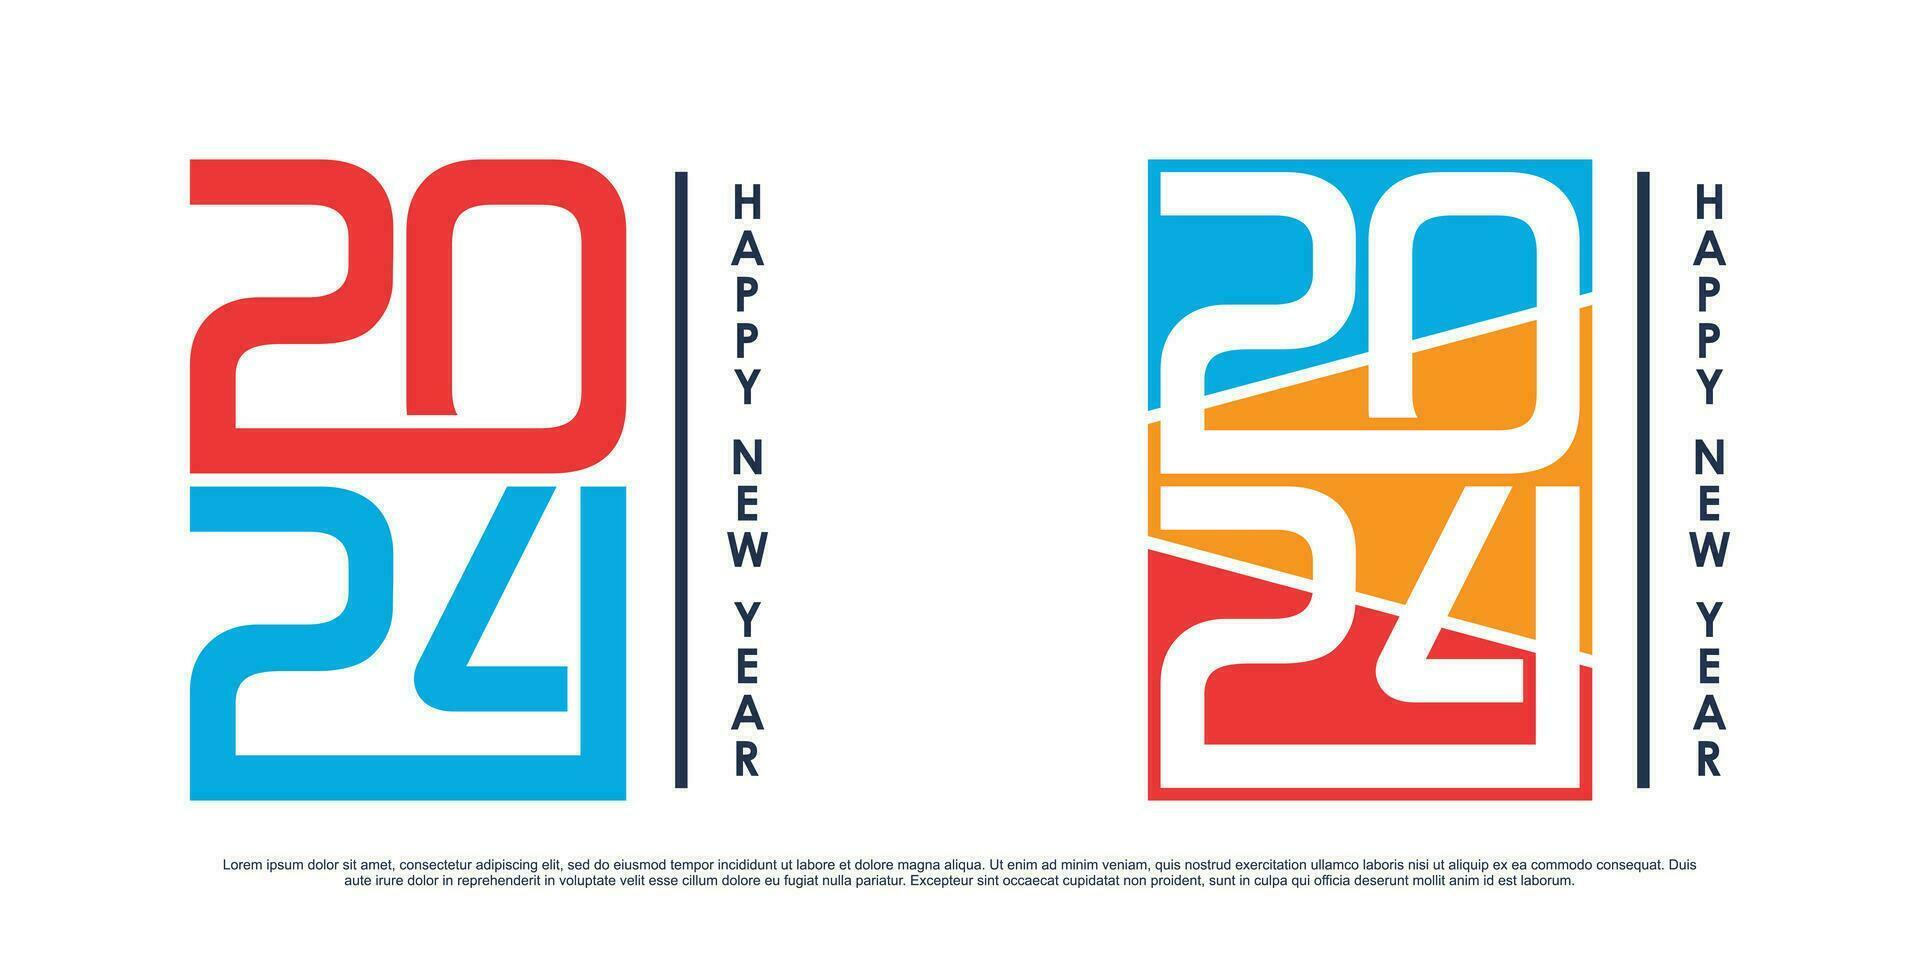 2024 contento nuevo año logo vector diseño con moderno idea